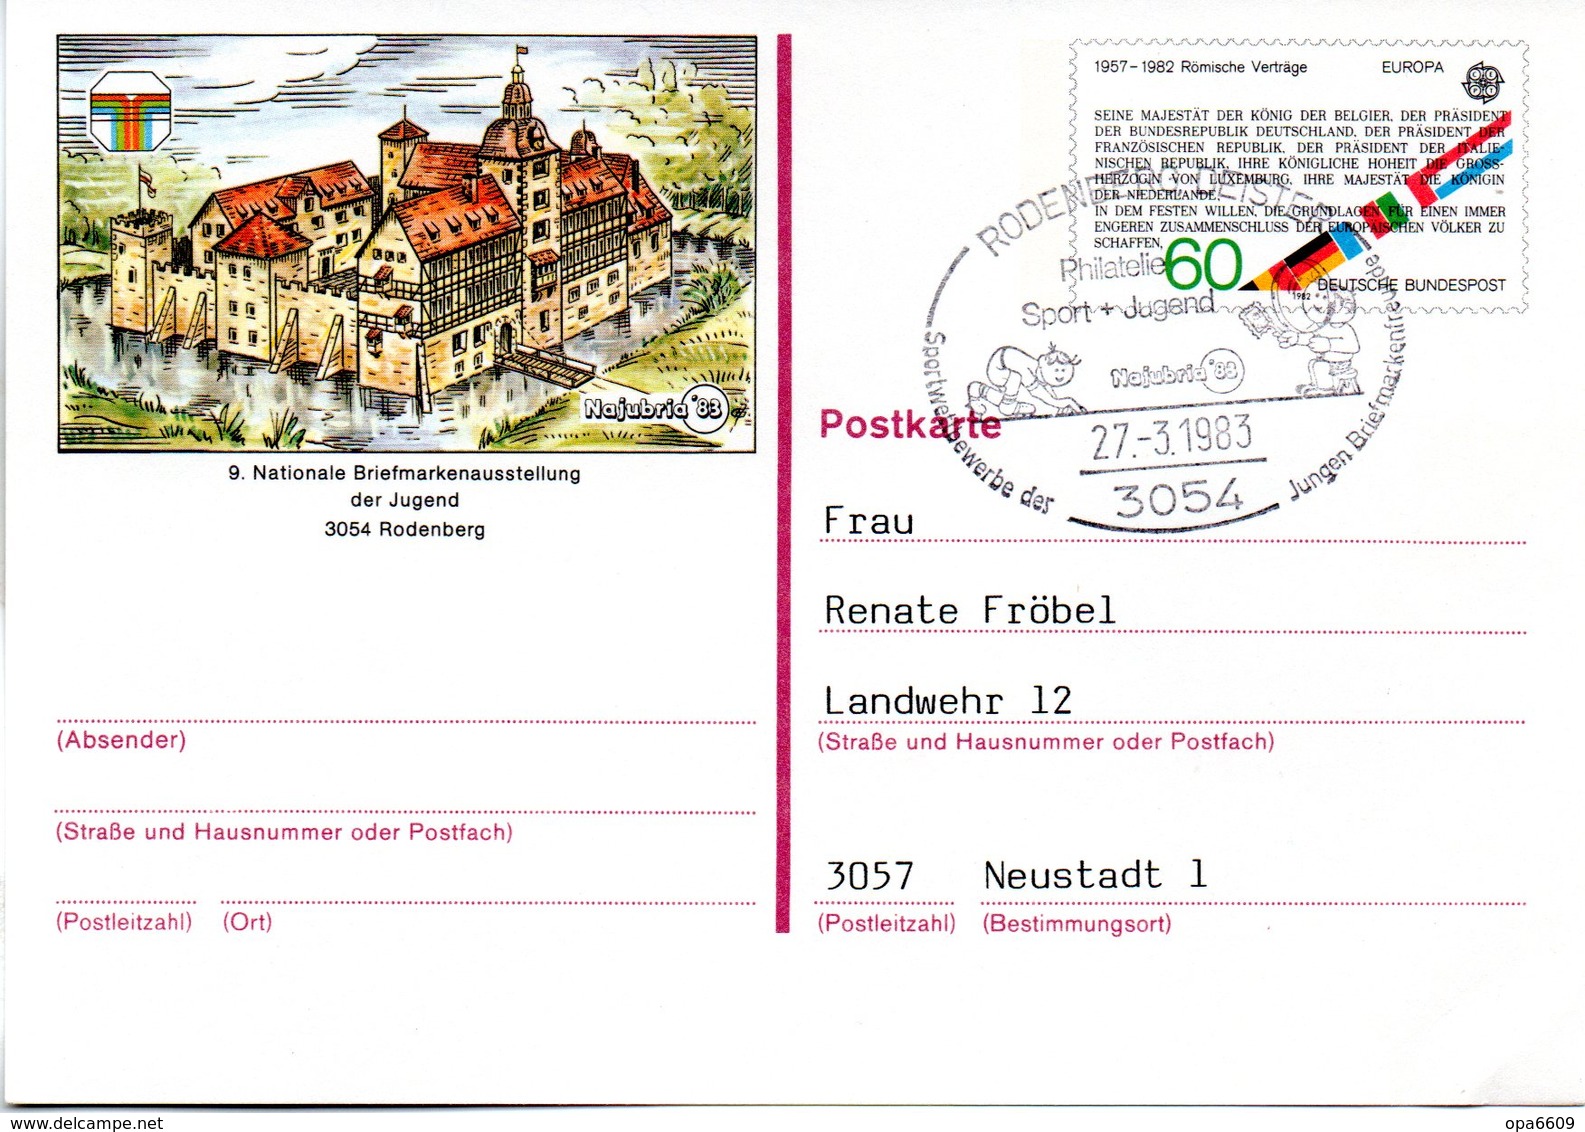 BRD Amtliche GZS-Sonderpostkarte PSo 7 "NAJUBRIA'83 In Rodenberg" WSt "Europamarke 1982" 60(Pf),SSt 27.3.1983 RODENBERG - Postkarten - Gebraucht